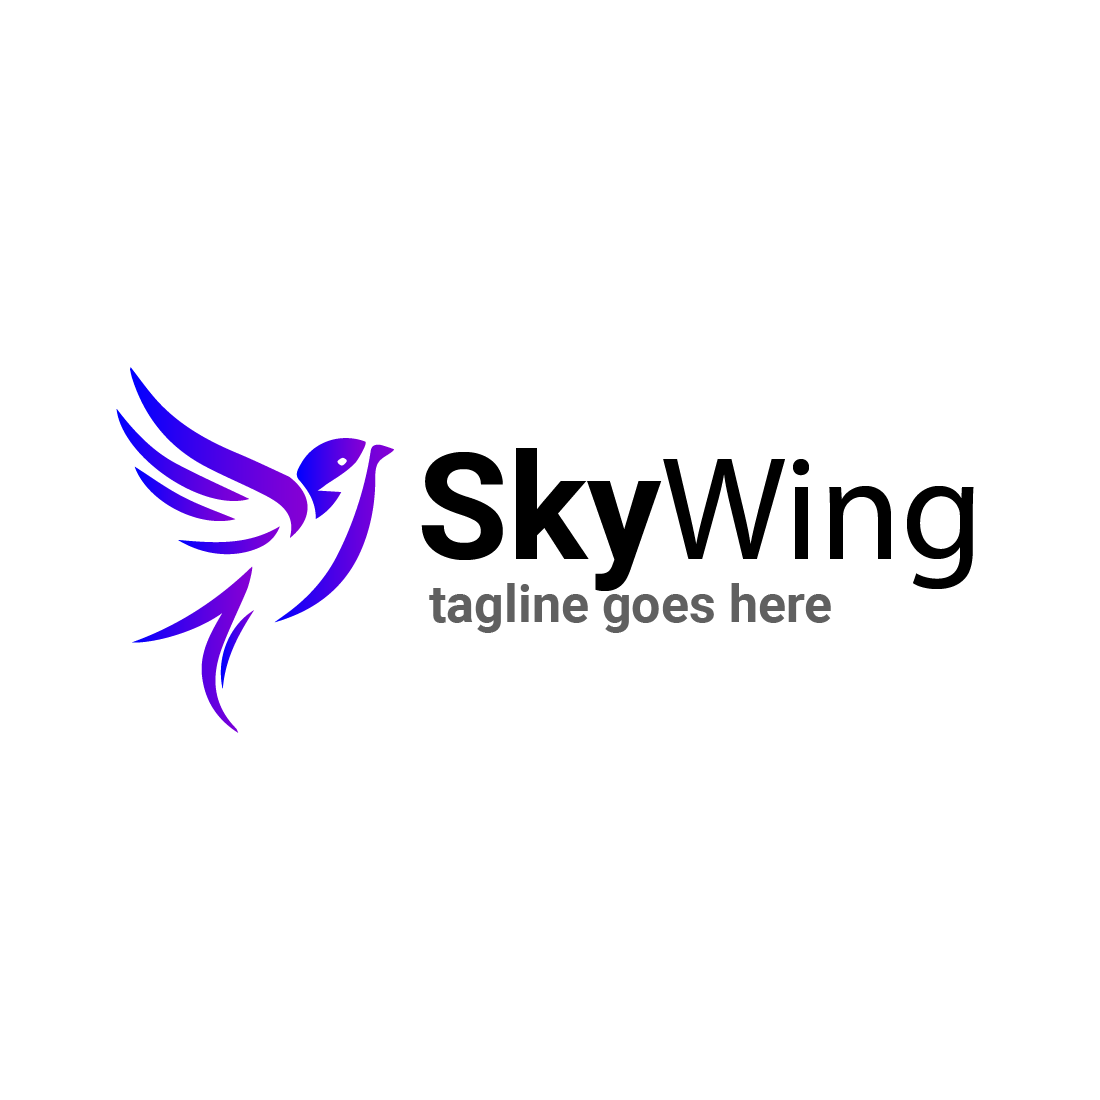 Sky wing logo , bird logo preview image.